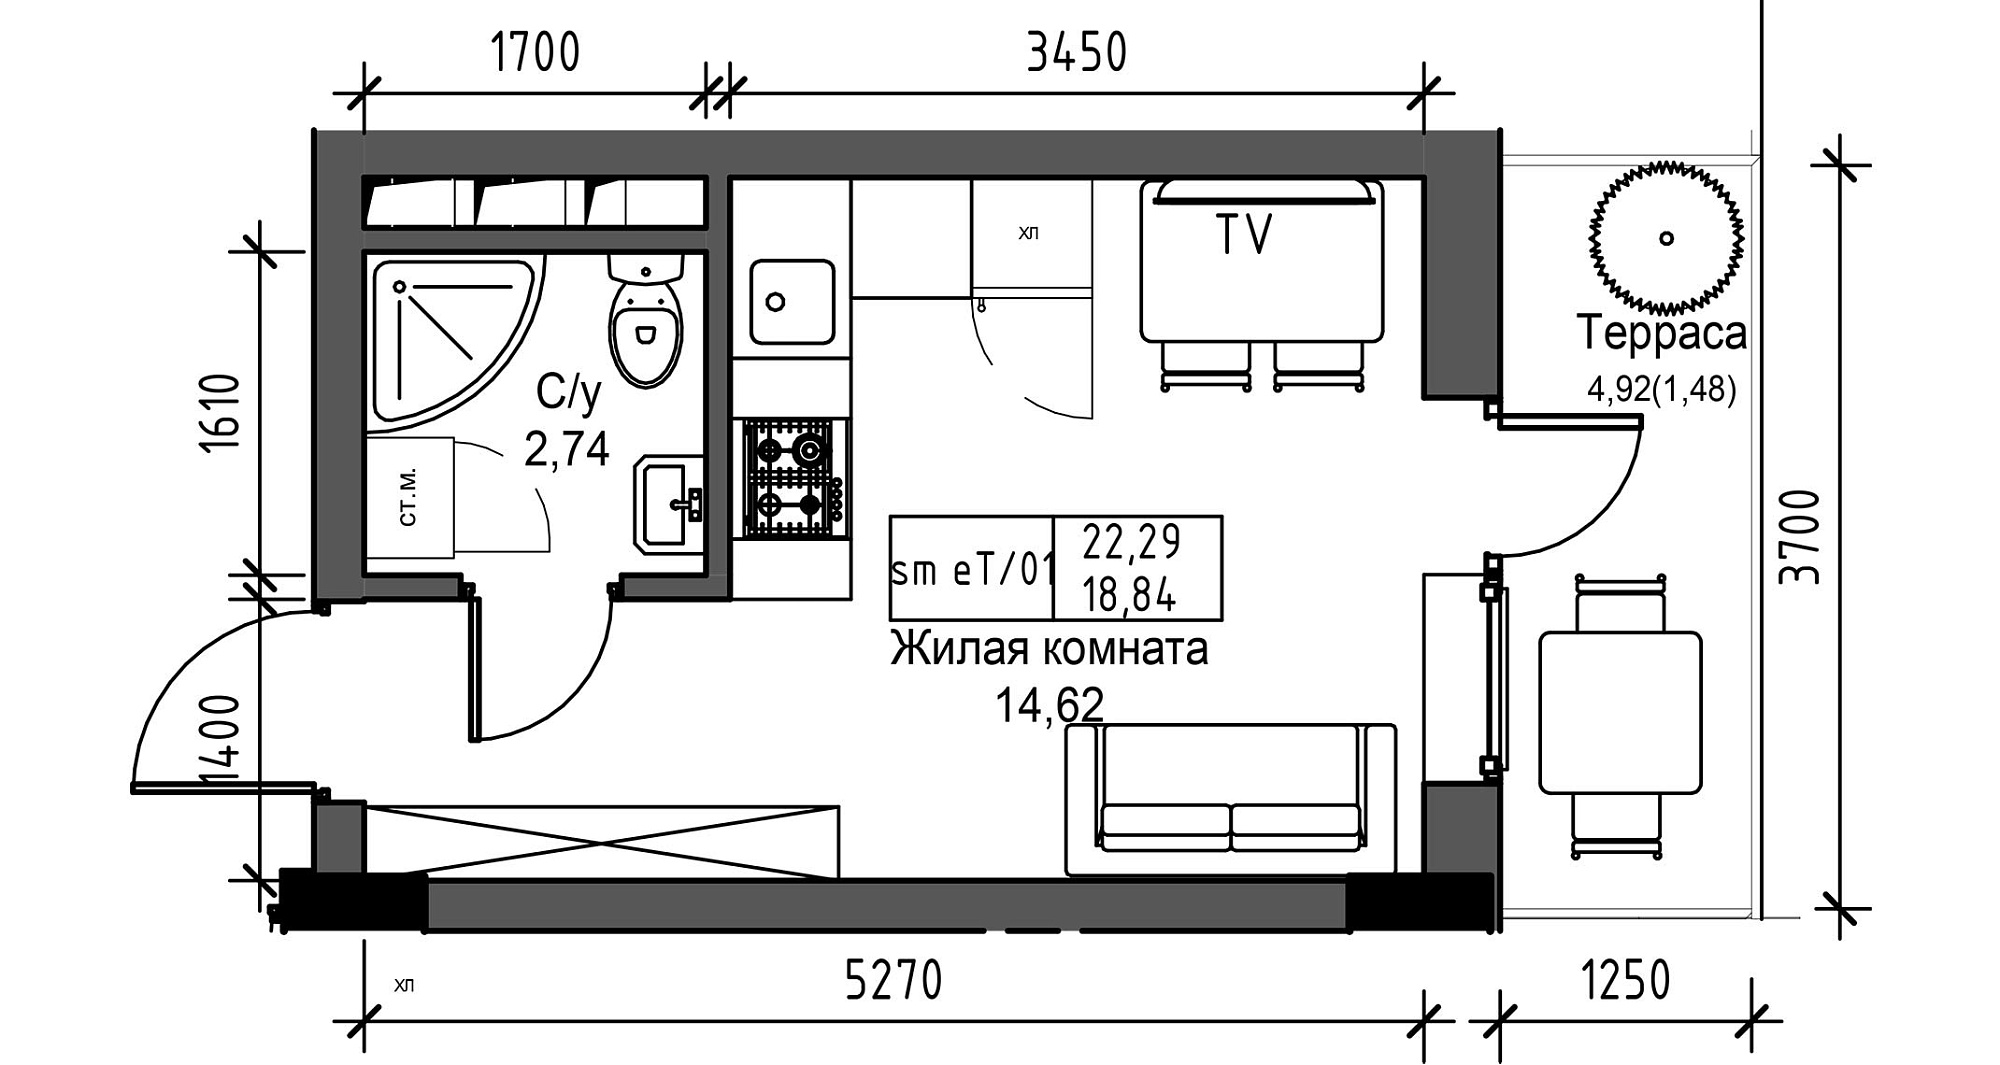 Планировка Smart-квартира площей 18.84м2, UM-003-05/0040.